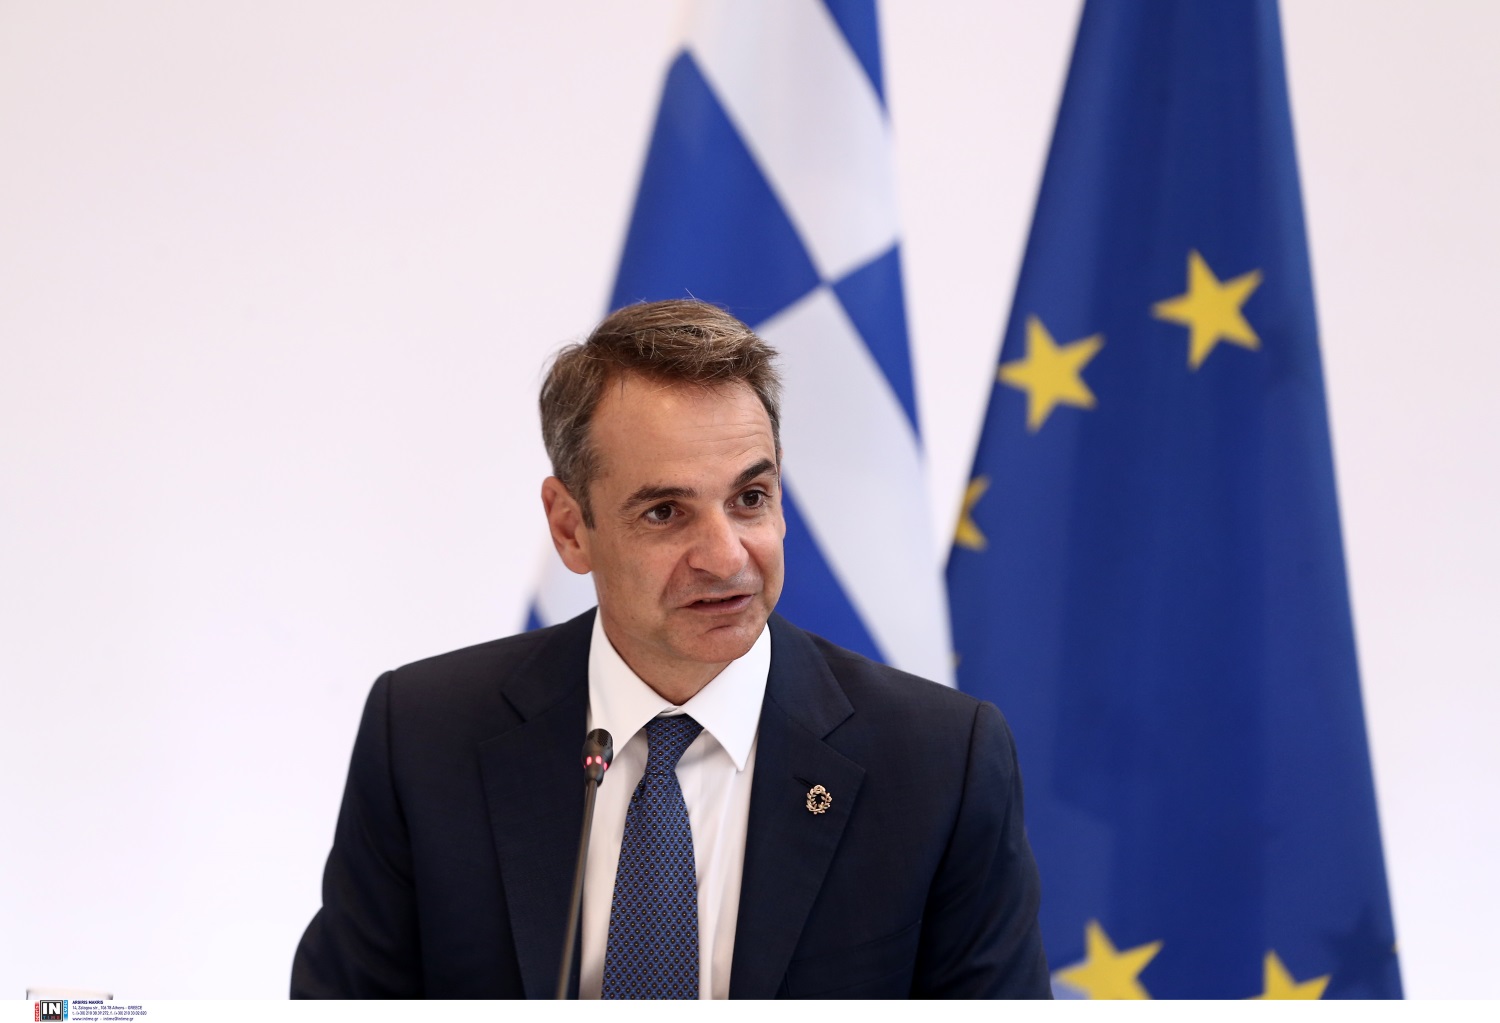 Πόθεν έσχες - Κυριάκος Μητσοτάκης: Τι δήλωσε ο πρωθυπουργός για το 2019